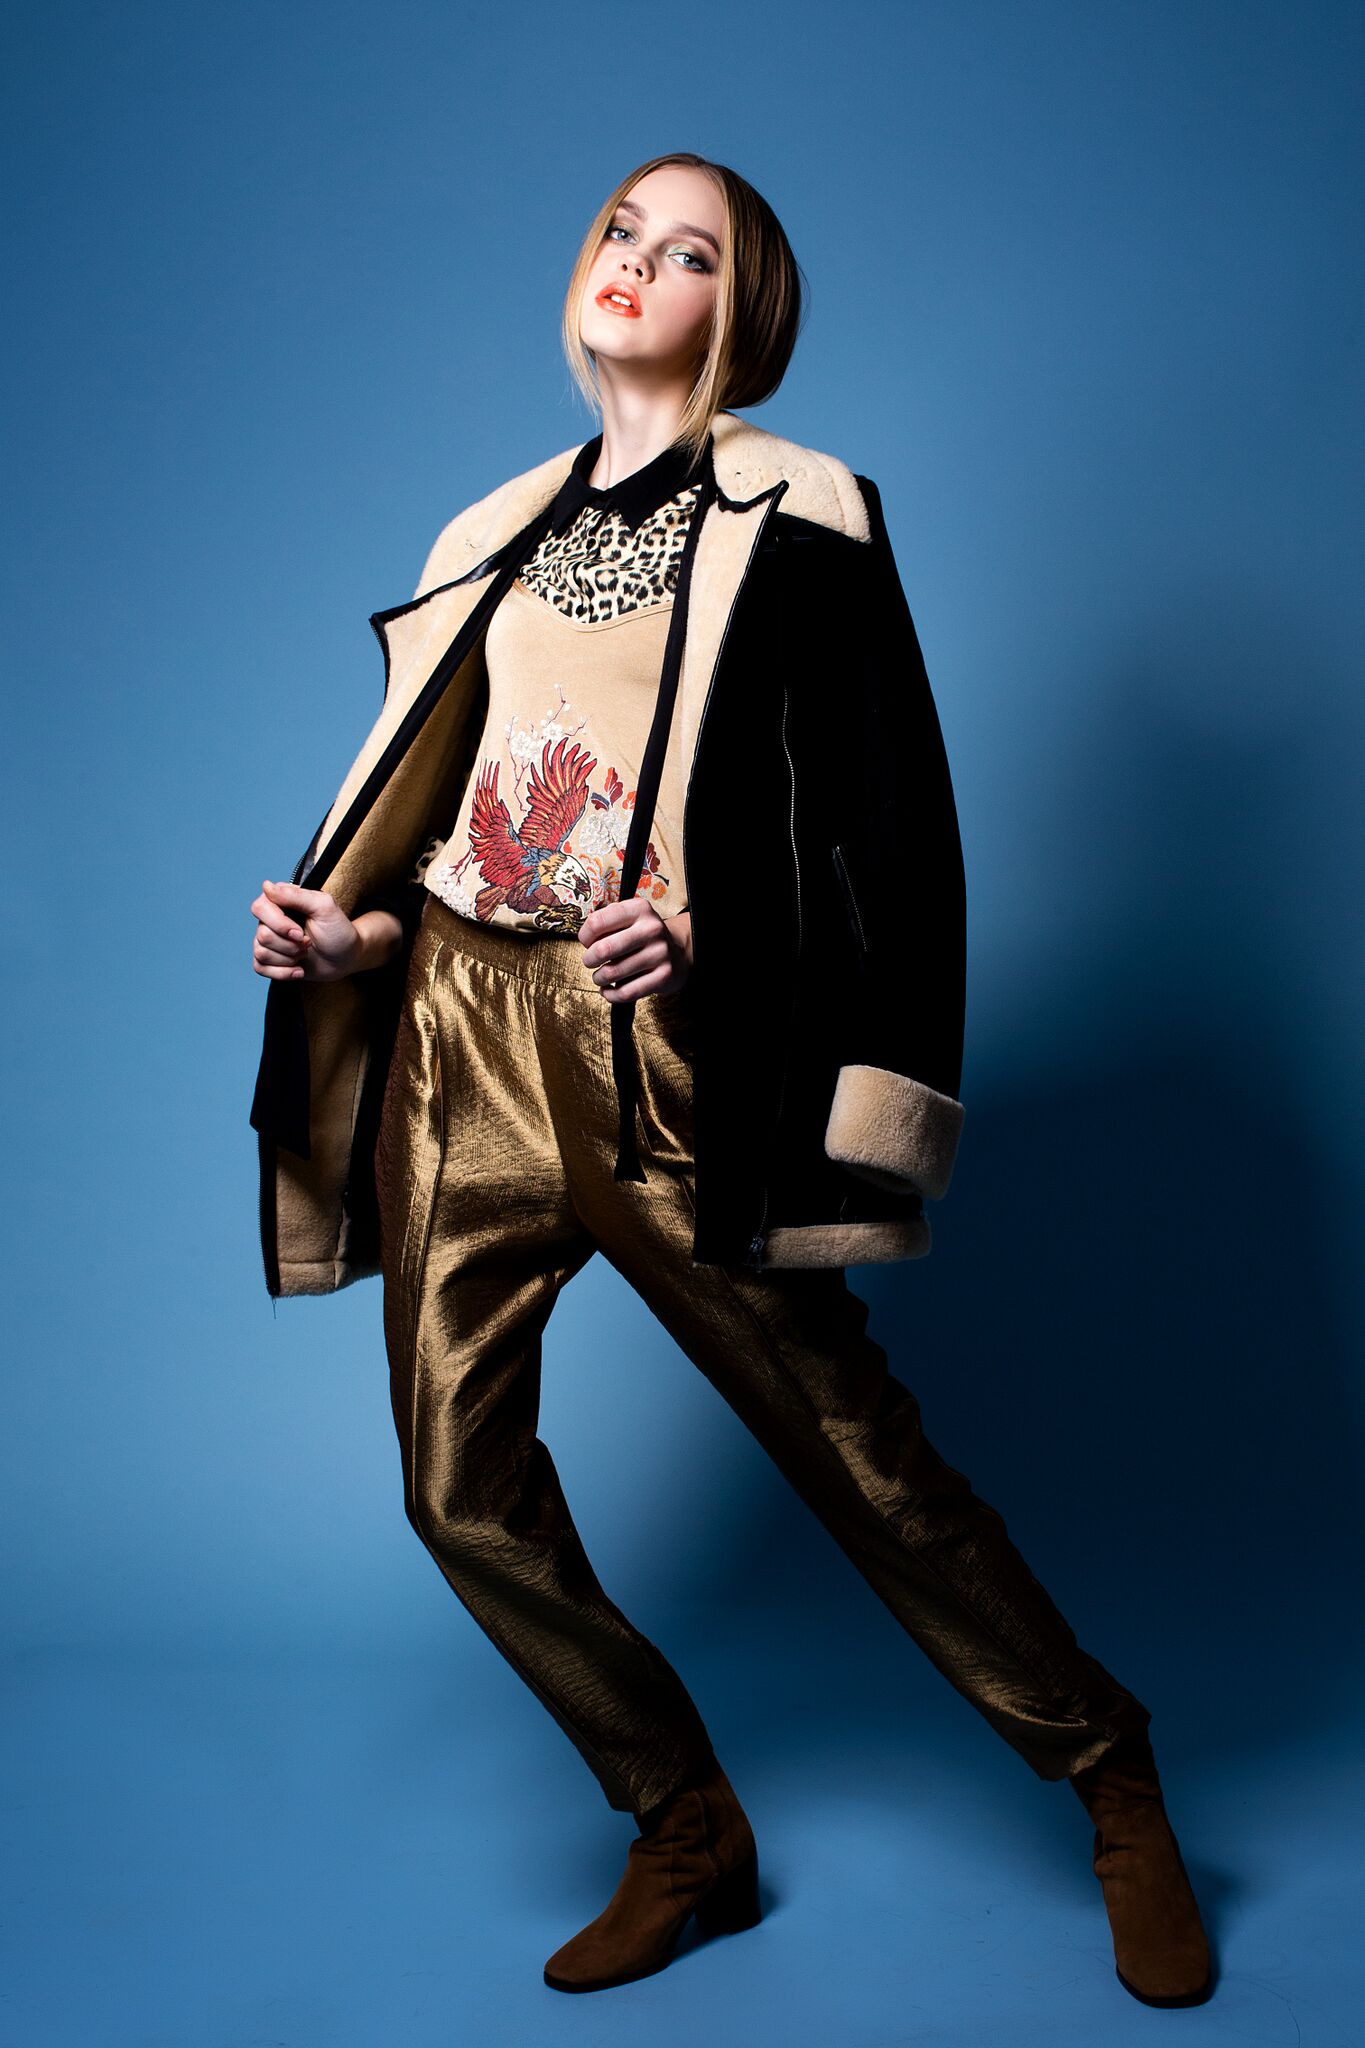 Полина Симонова - аккредитованная модель для участия в подиумных показах на Междунродной Детской Неделе моды